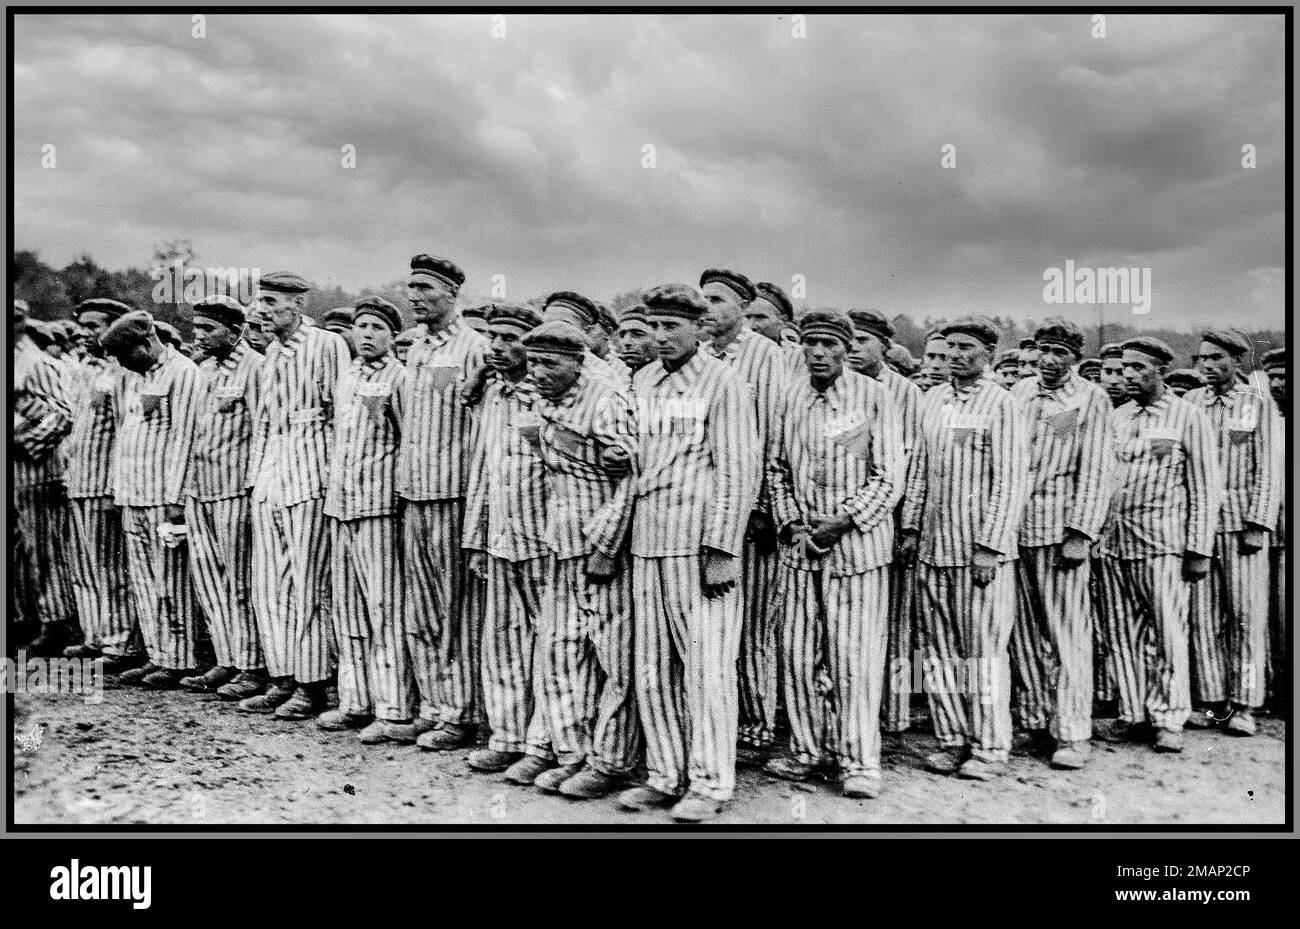 Buchenwald, [Thuringe] prisonniers allemands nazis debout pendant un appel nominal. Chacun porte un chapeau rayé et un roulement uniforme de couleur, des badges triangulaires et des numéros d'identification. 1938-1941 Buchenwald Conctation Camp Thuringe Allemagne nazie Banque D'Images